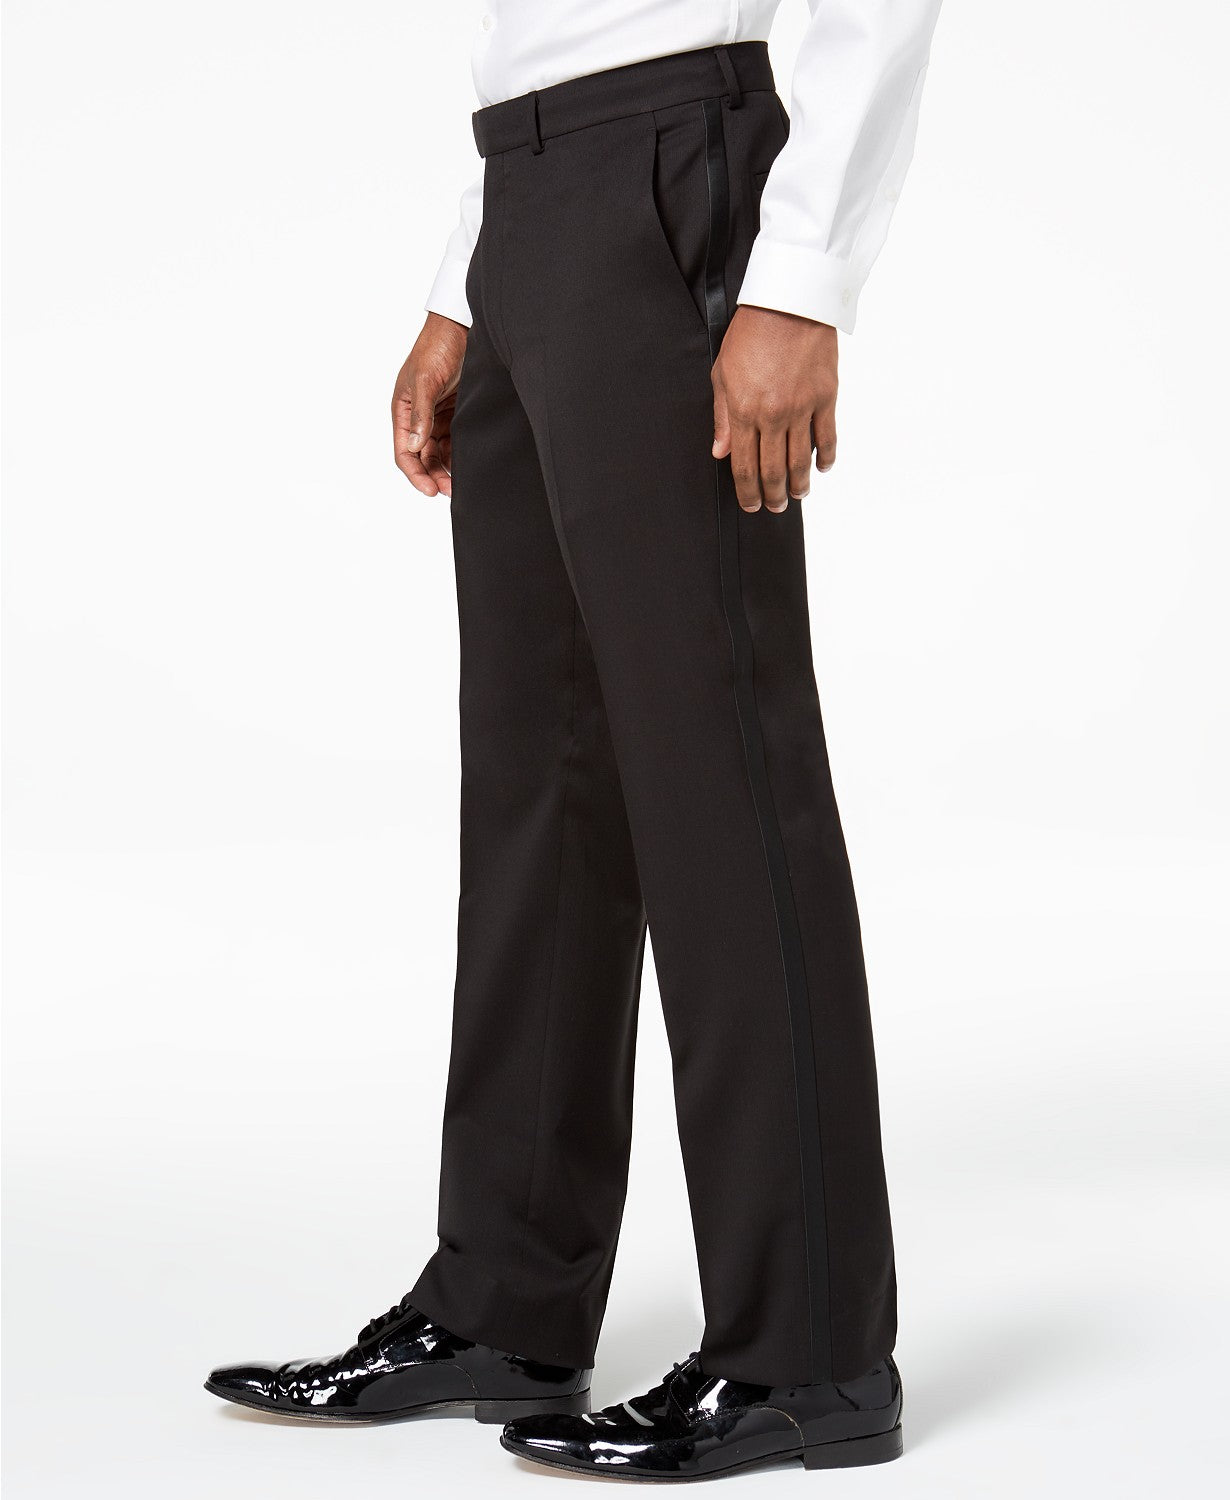 Kenneth Cole Mens Tuxedo Suit 40L 33 x 32 Flex Slim-Fit Black Notch Lapel